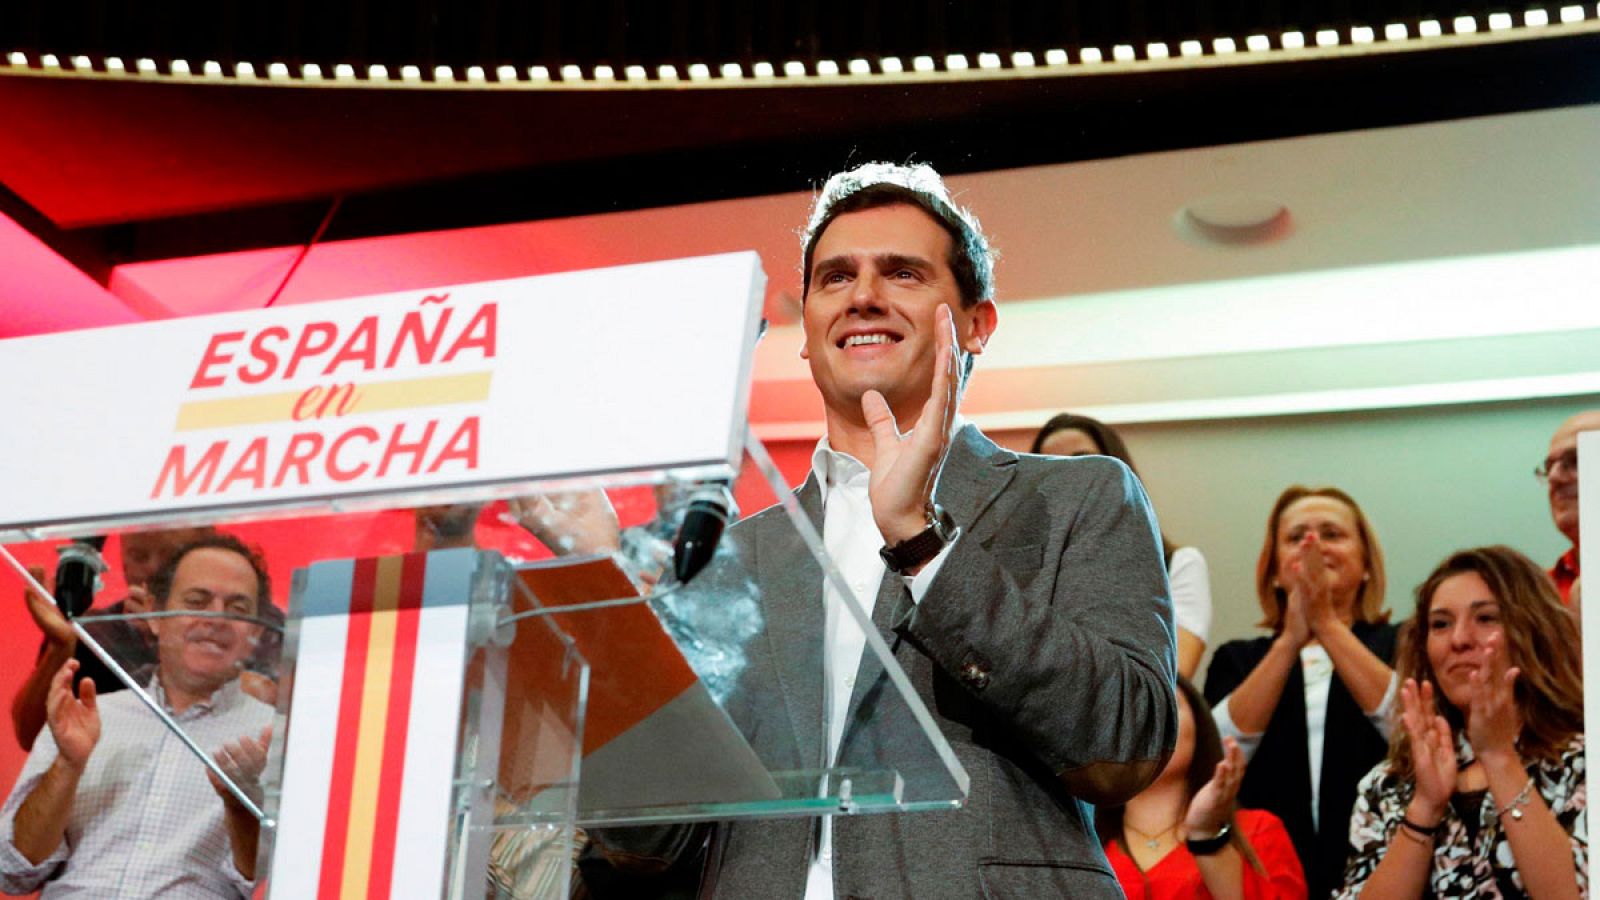 Elecciones generales 10N: Rivera levanta el veto a Sánchez y se abre a pactar con el PSOE si hay bloqueo tras el 10N - RTVE.es